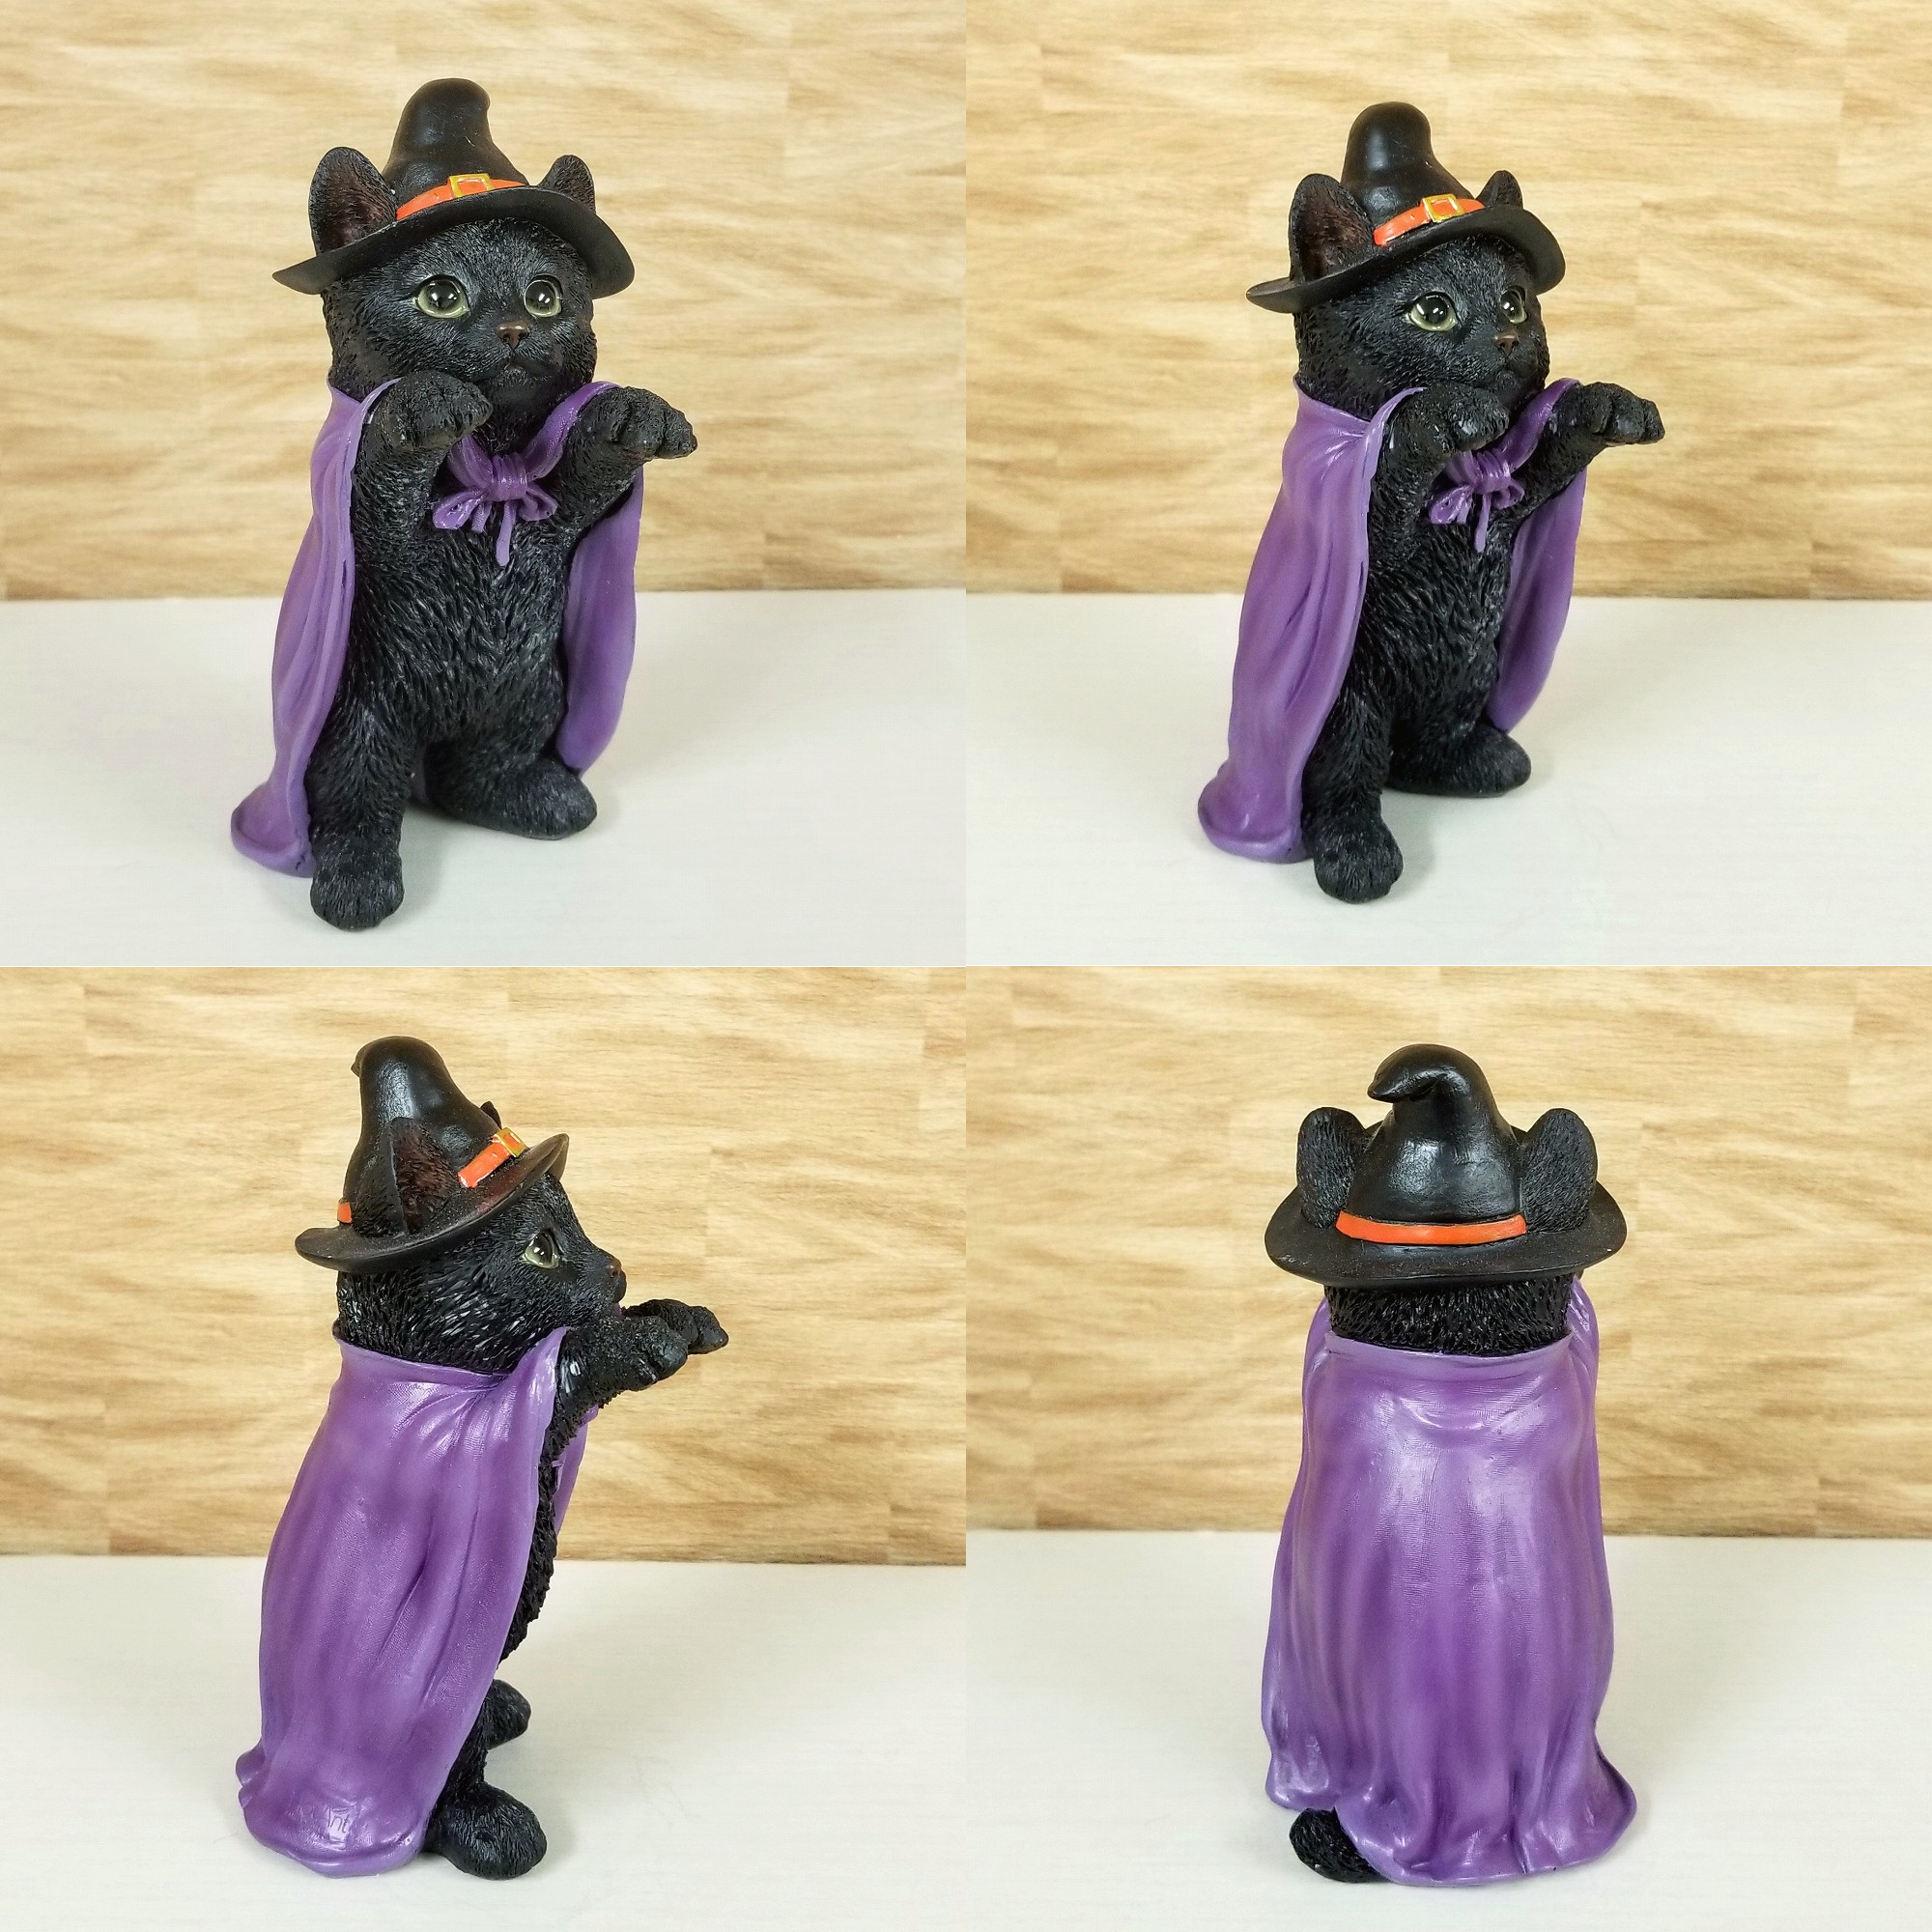 ハロウィン 飾り付け 猫の置物 黒猫 魔女 雑貨 クロネコ 魔法使い ハロウィングッズ ネコ インテリア オーナメント かわいい